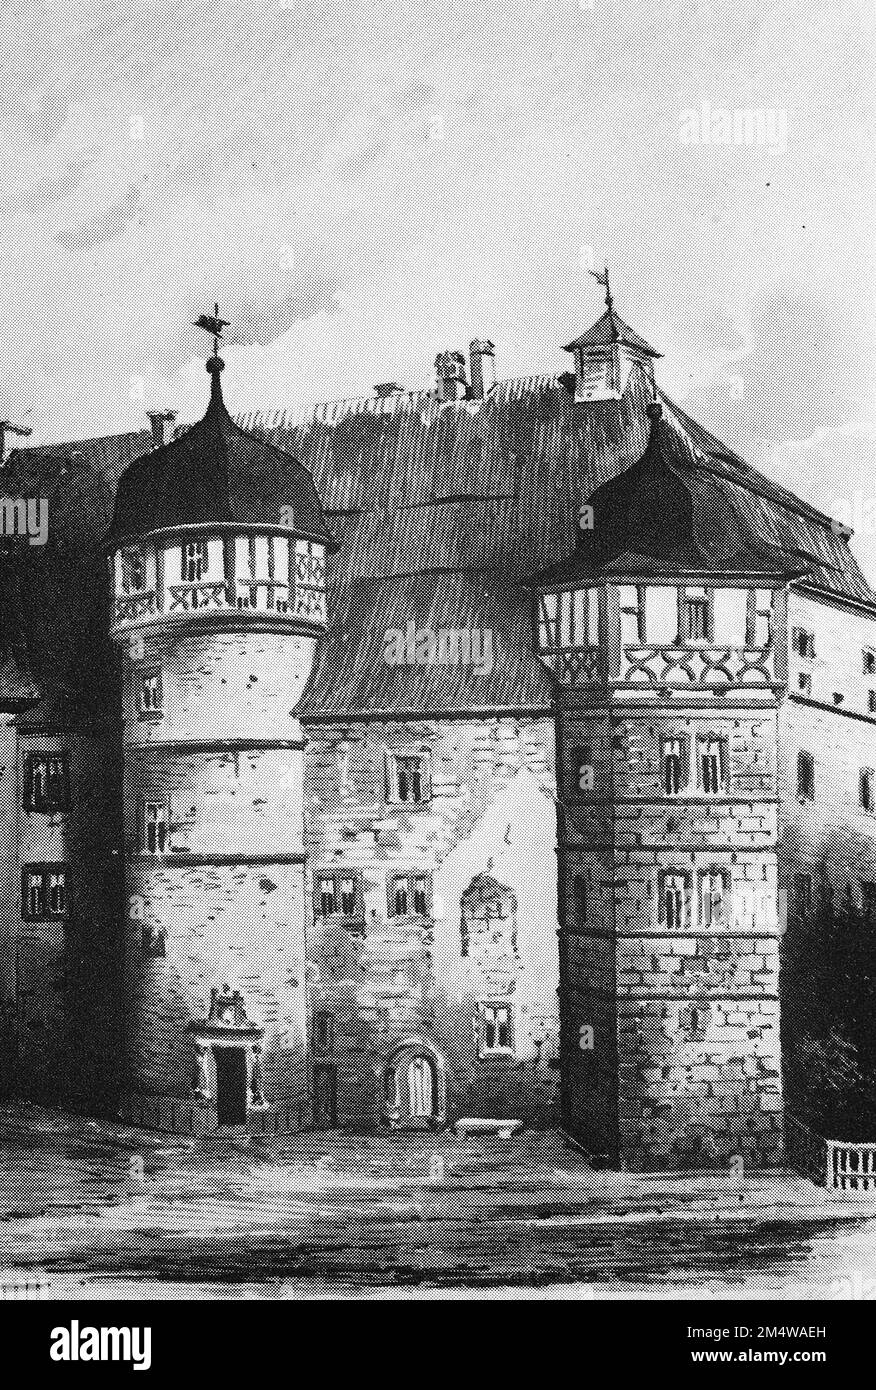 Historische Ansicht von Burg Bundorf, UM 1800, Bayern, Deutschland, Historisch, Digital restaurierte Reproduktion von einer Vorlage aus dem 19. Jahrhundert / v Banque D'Images